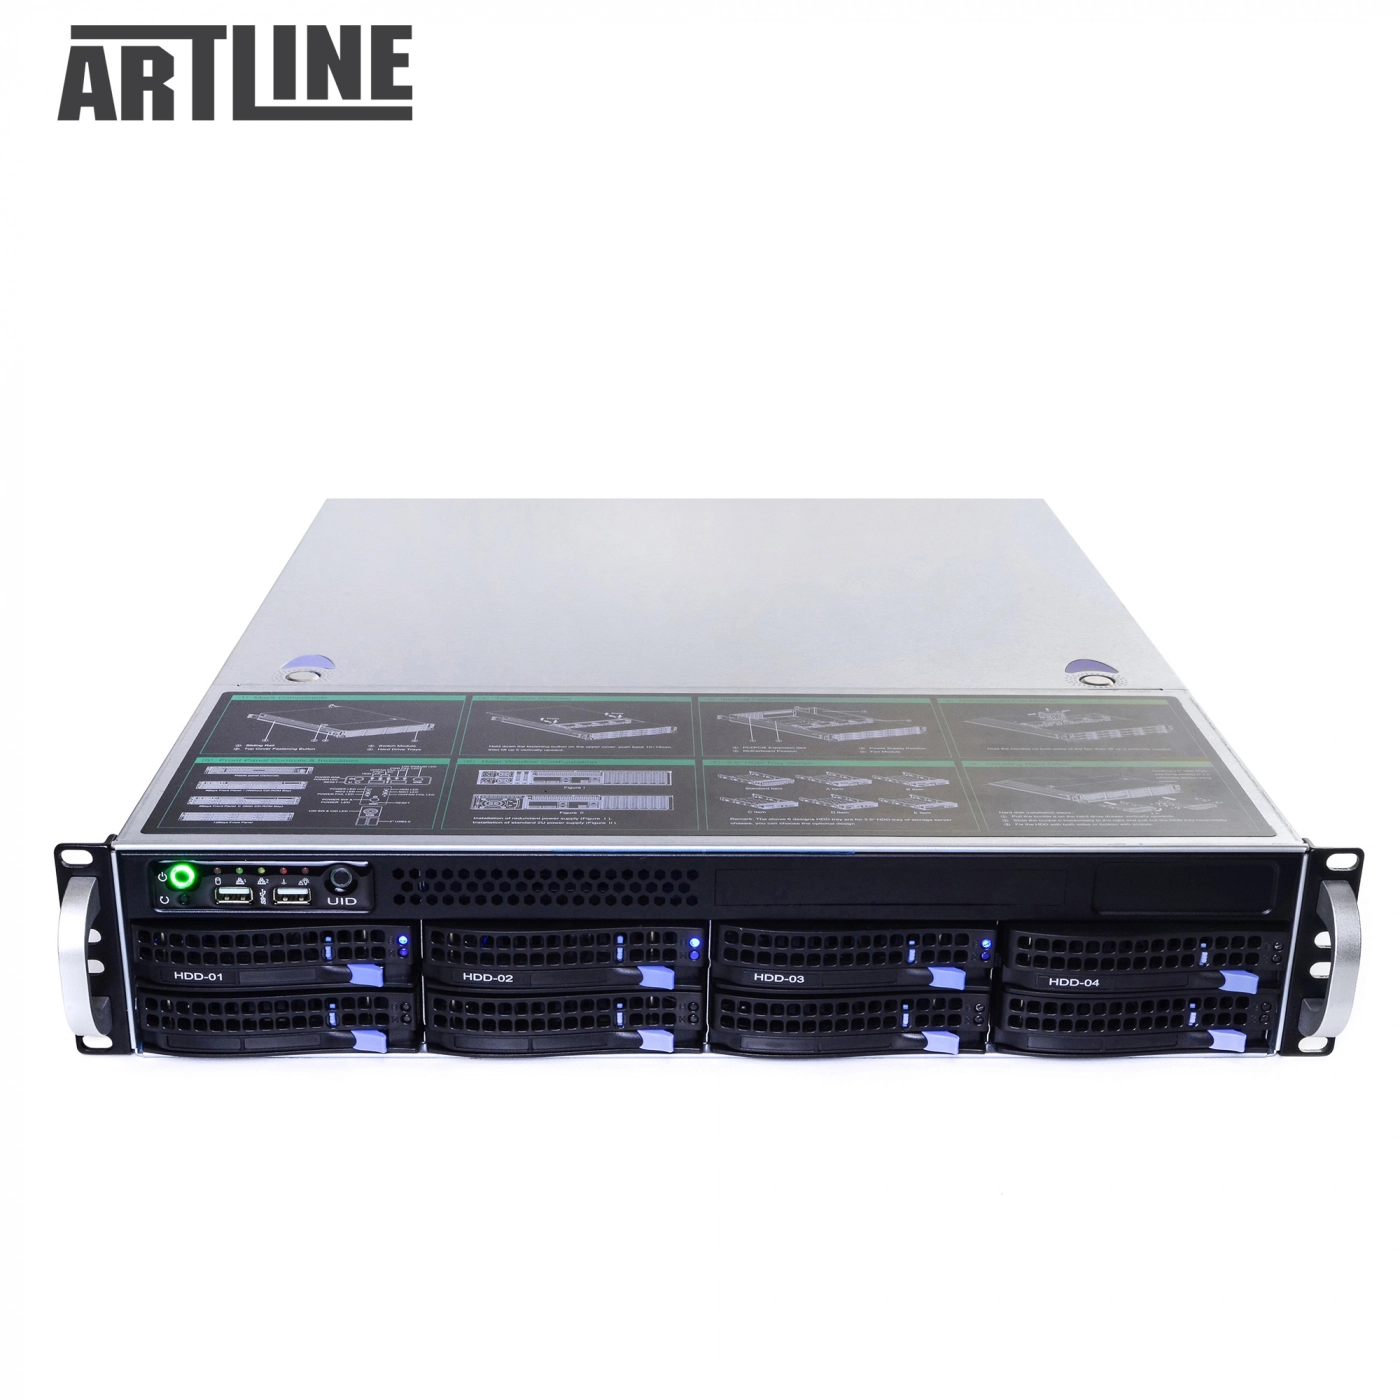 Купить Сервер ARTLINE Business R39v03 - фото 10